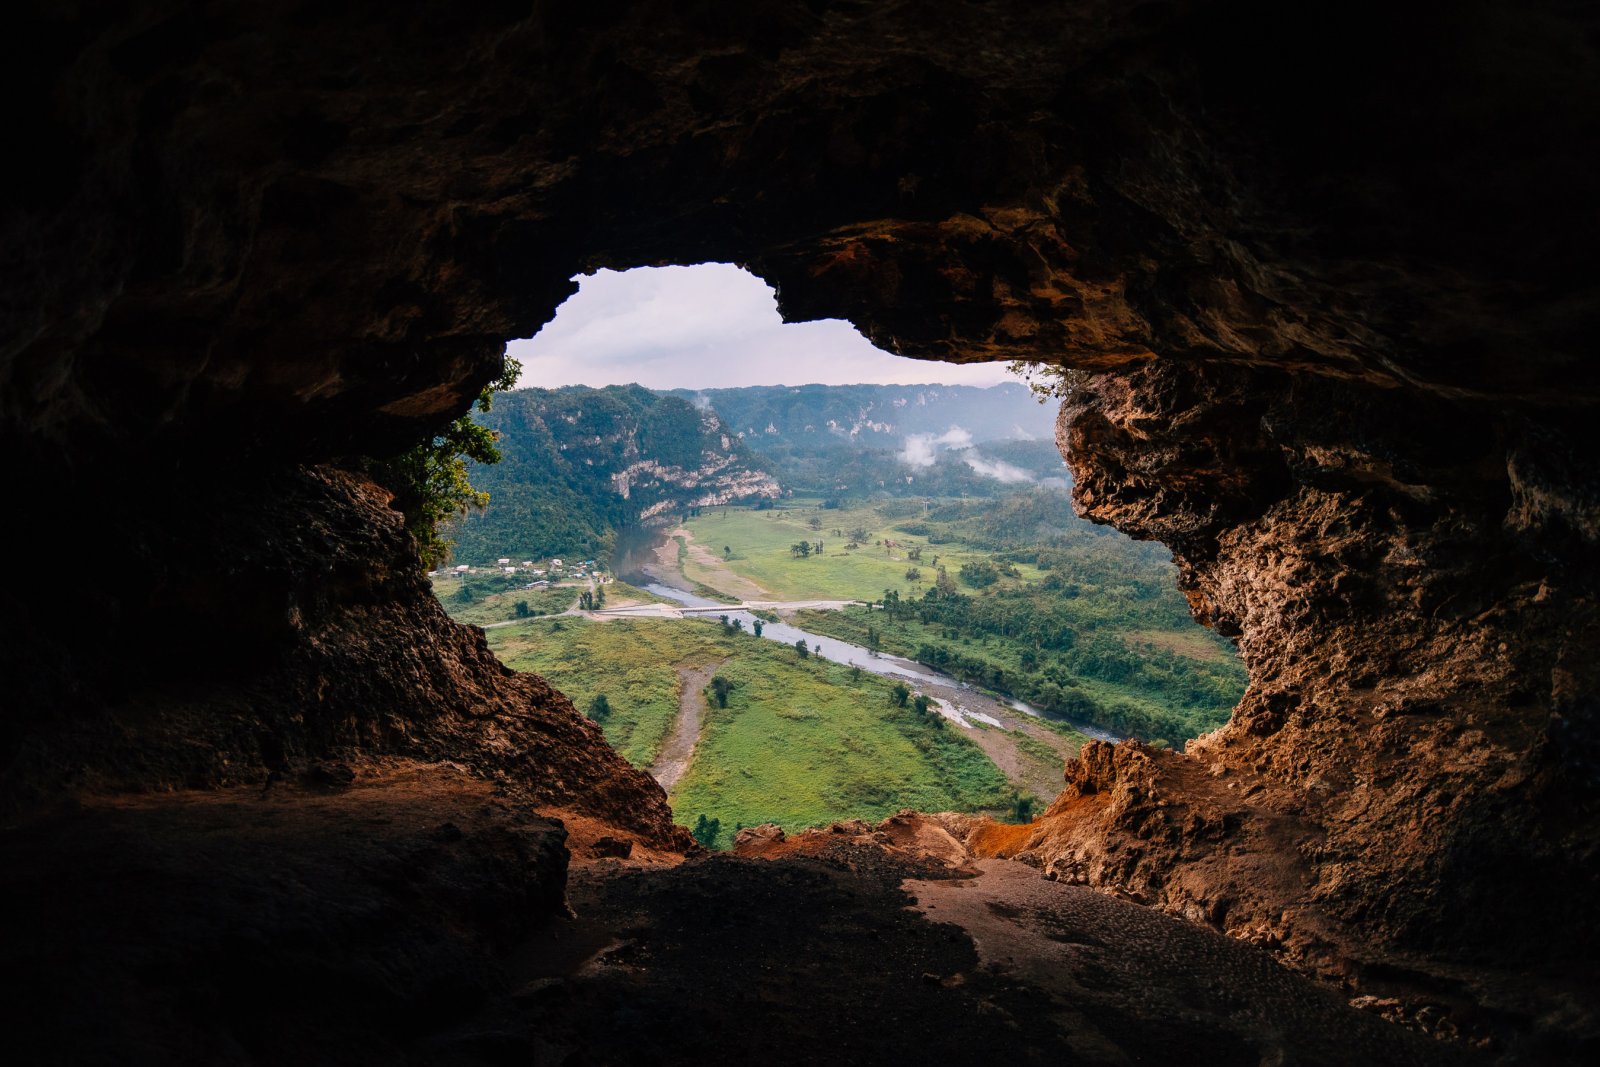 La apertura de una cueva revela un valle verde en Cueva Ventana.